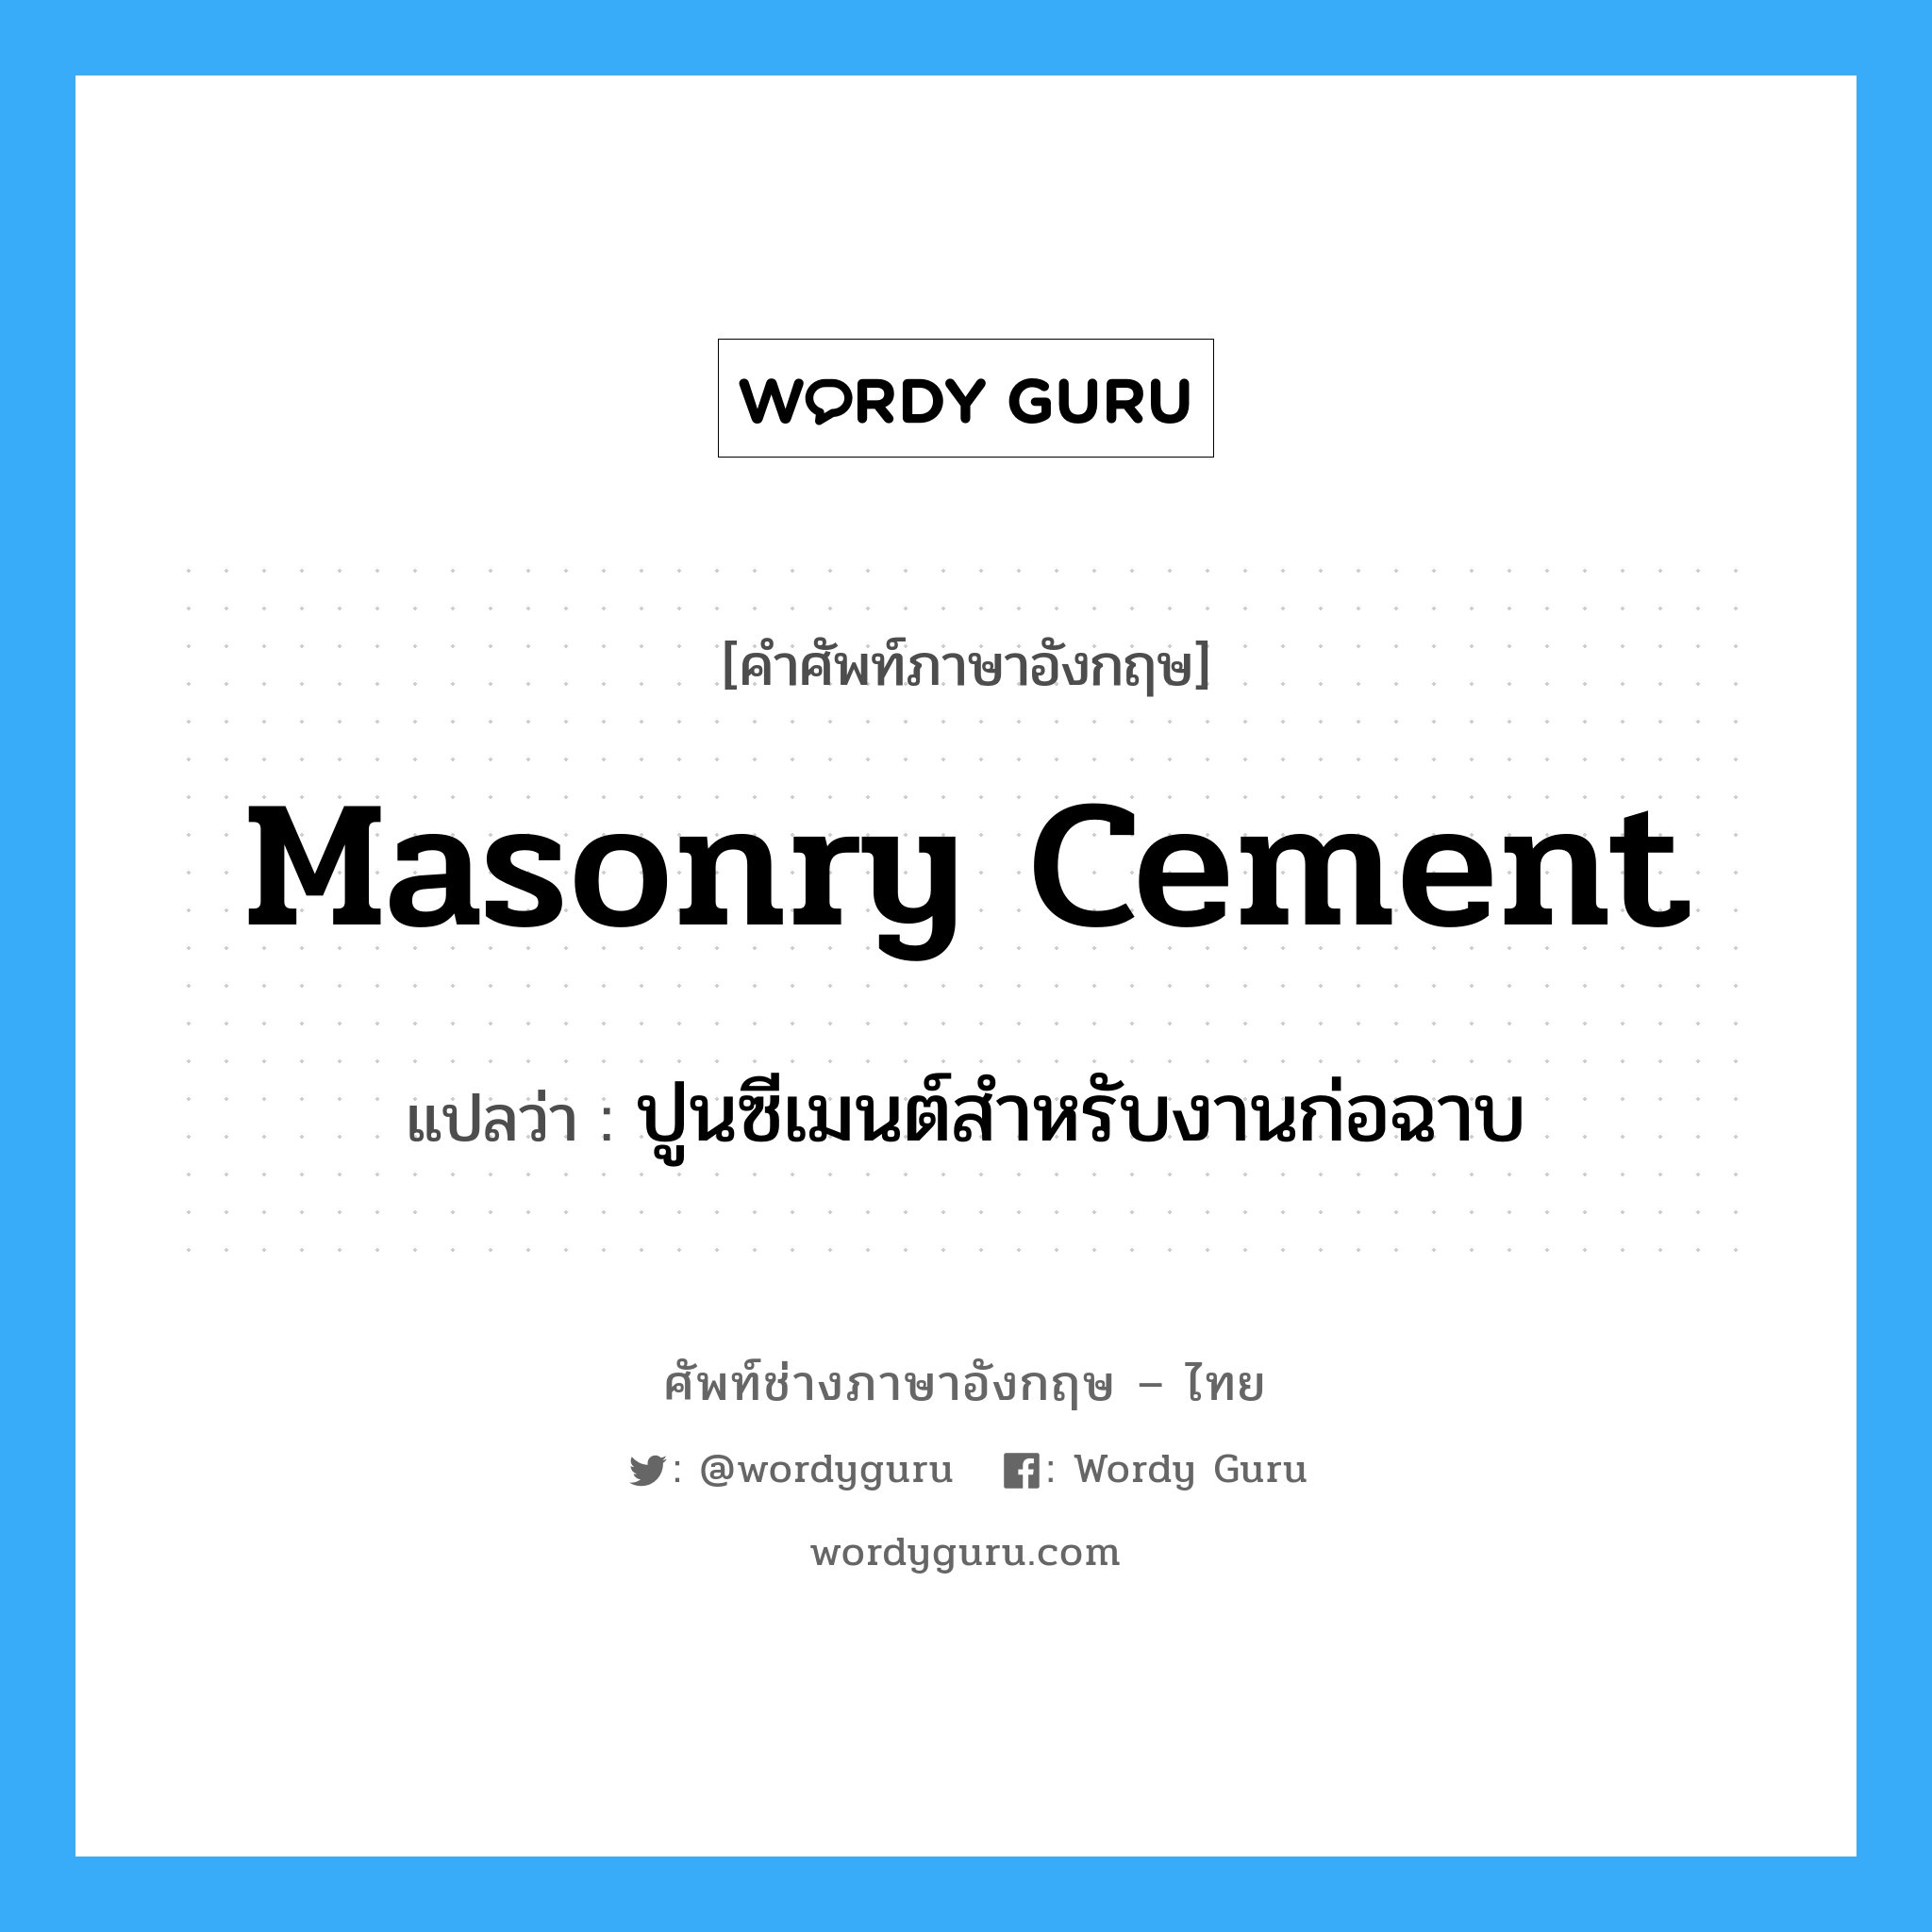 ปูนซีเมนต์สำหรับงานก่อฉาบ ภาษาอังกฤษ?, คำศัพท์ช่างภาษาอังกฤษ - ไทย ปูนซีเมนต์สำหรับงานก่อฉาบ คำศัพท์ภาษาอังกฤษ ปูนซีเมนต์สำหรับงานก่อฉาบ แปลว่า masonry cement